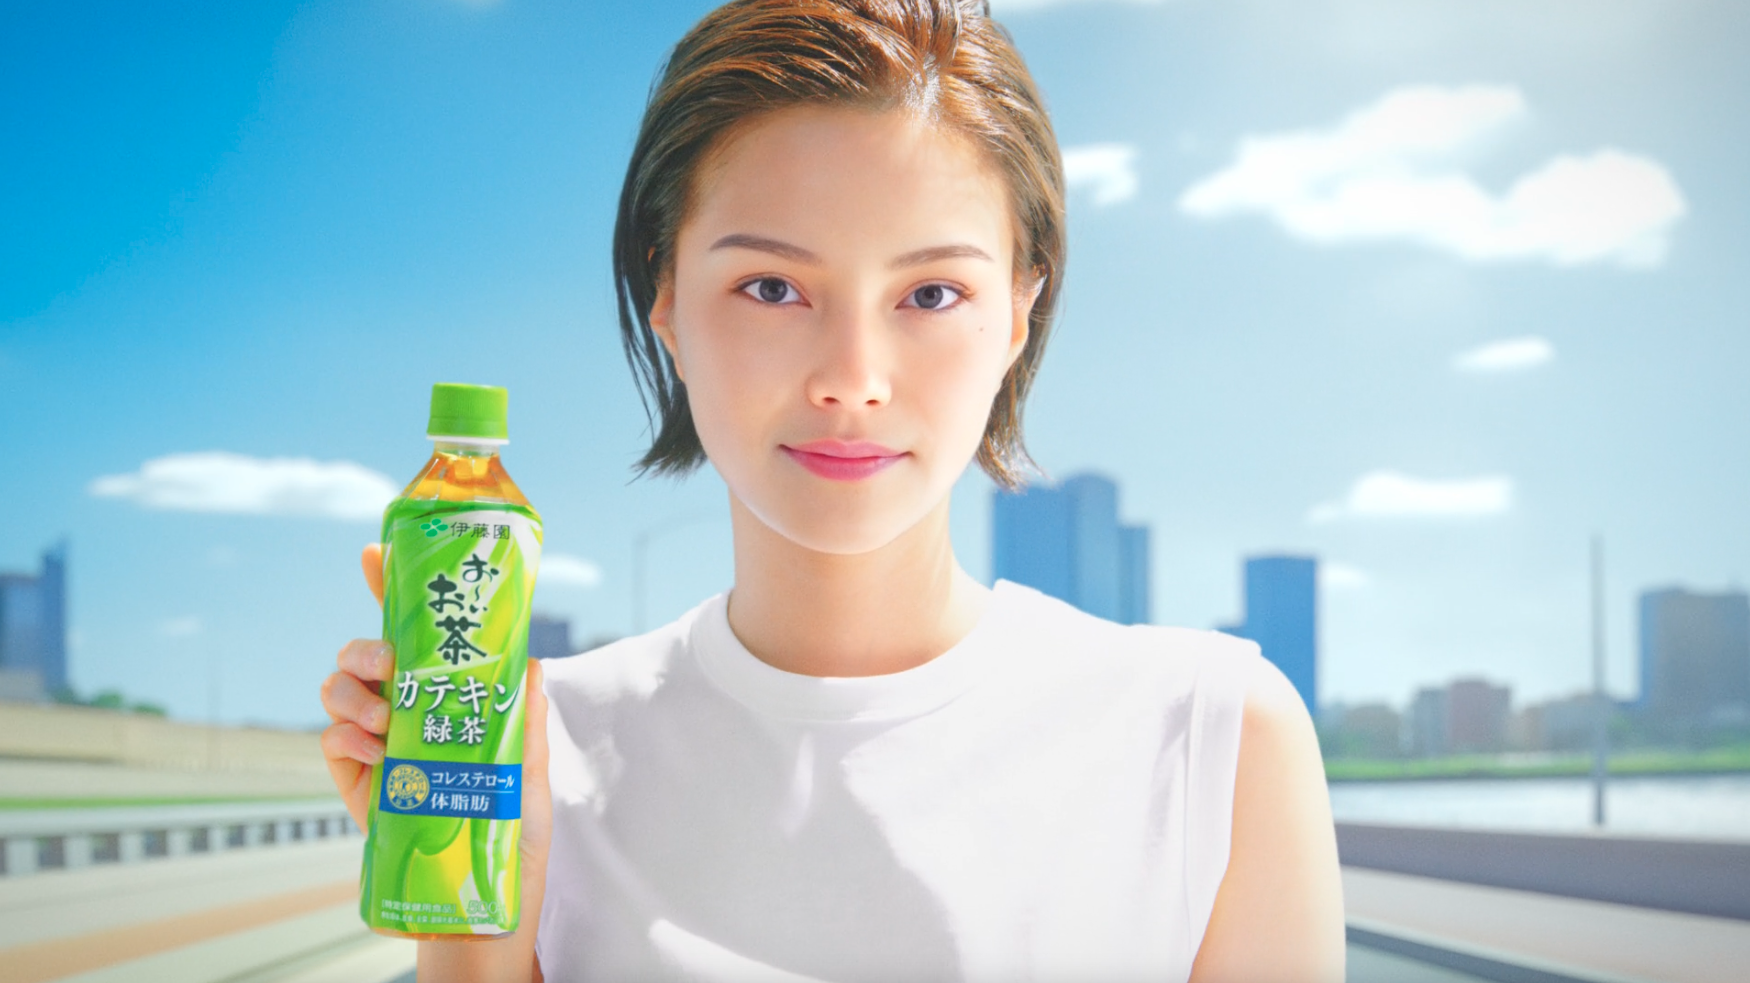 日本初、伊藤園がテレビCMにAIタレント起用─「お～いお茶 カテキン緑茶」CMに登場、SNSで話題